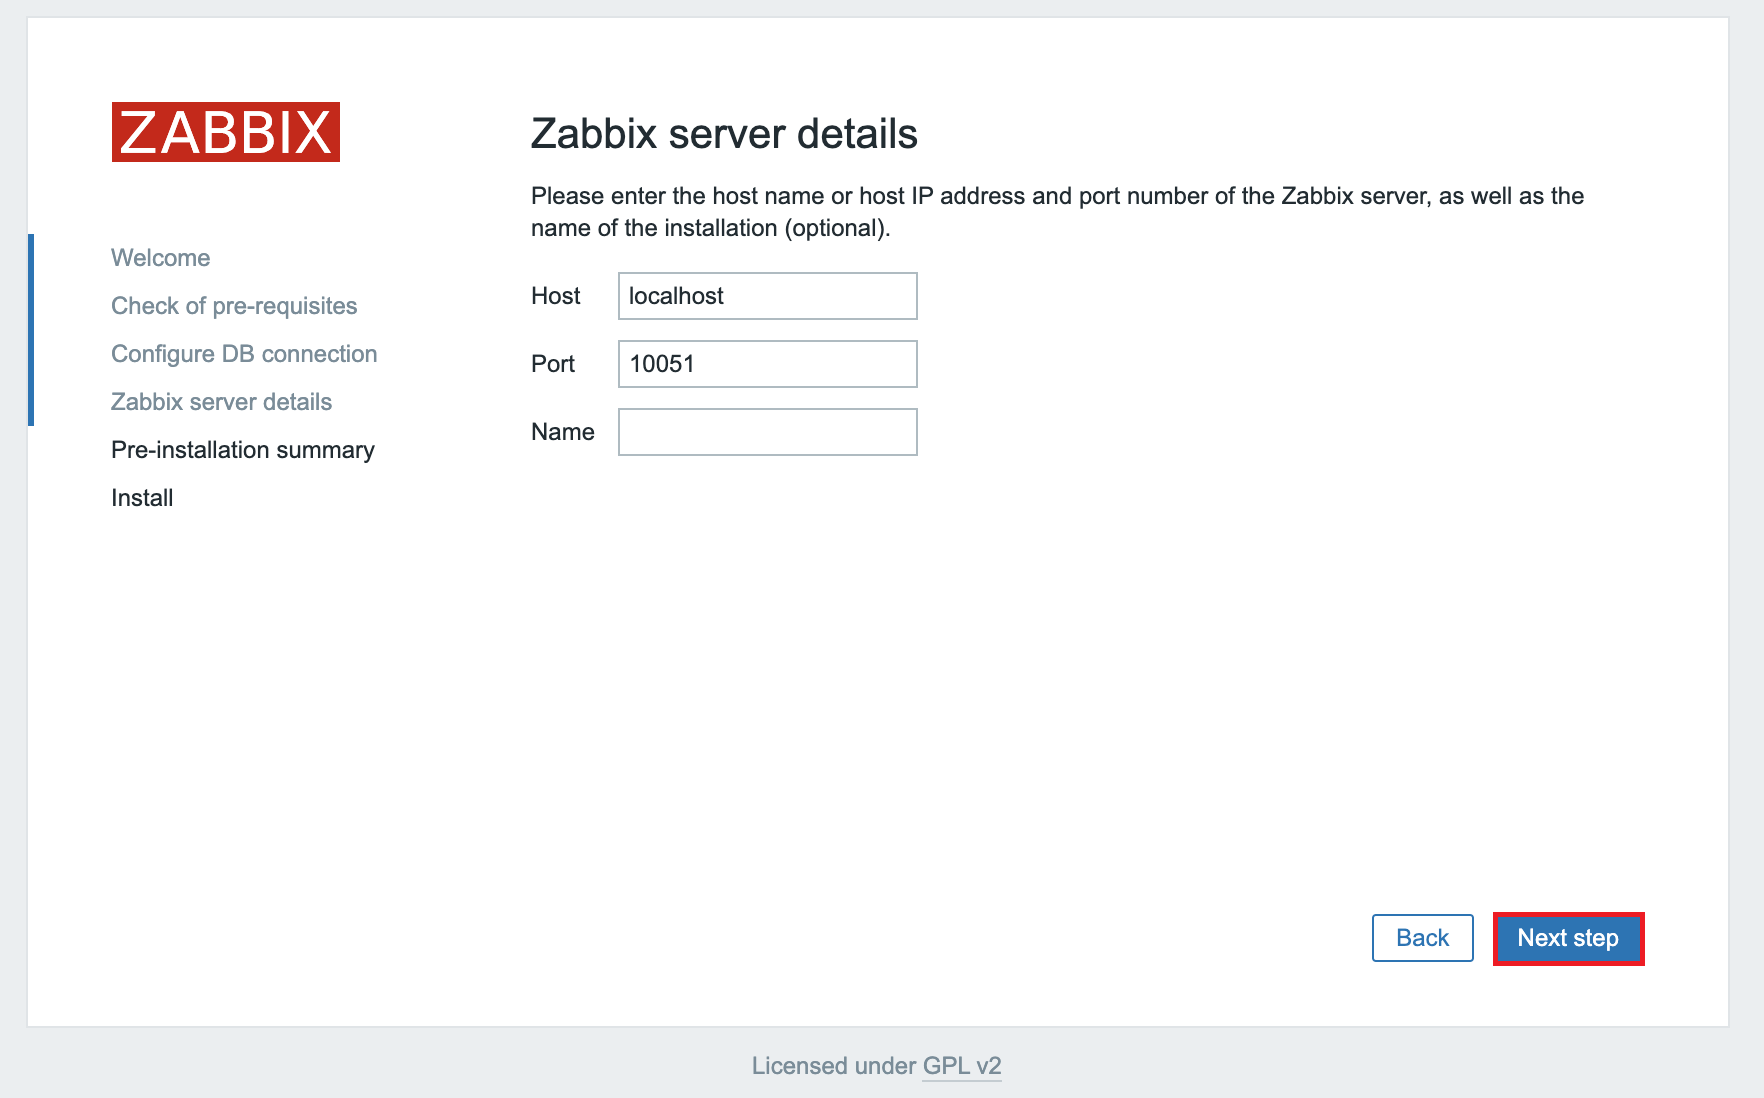 zabbix server details